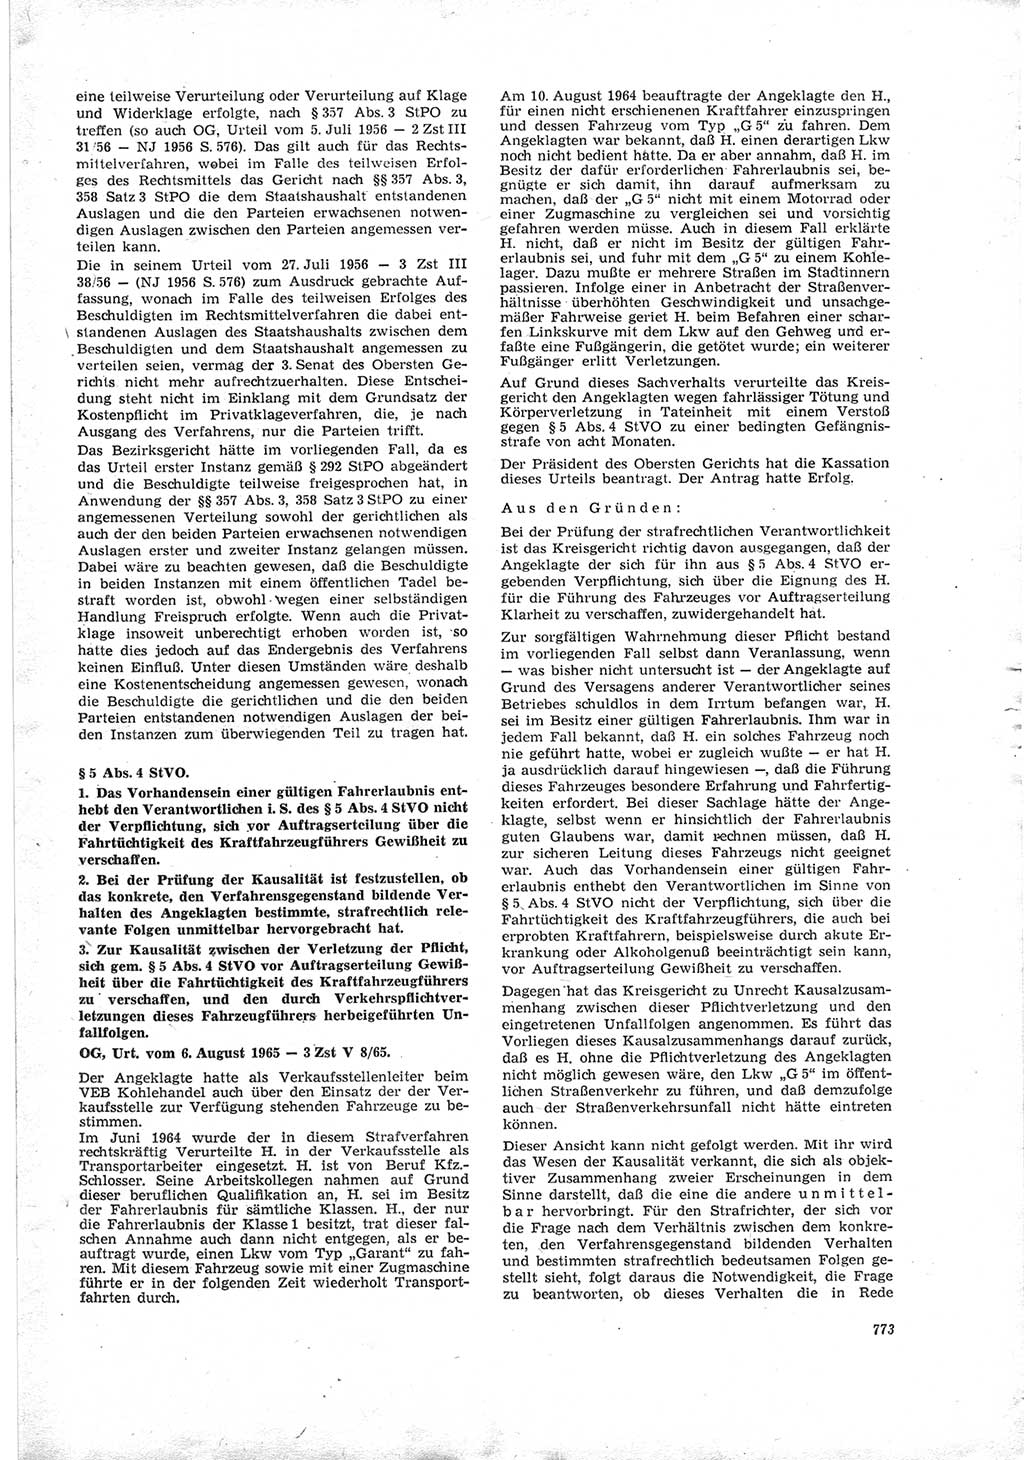 Neue Justiz (NJ), Zeitschrift für Recht und Rechtswissenschaft [Deutsche Demokratische Republik (DDR)], 19. Jahrgang 1965, Seite 773 (NJ DDR 1965, S. 773)